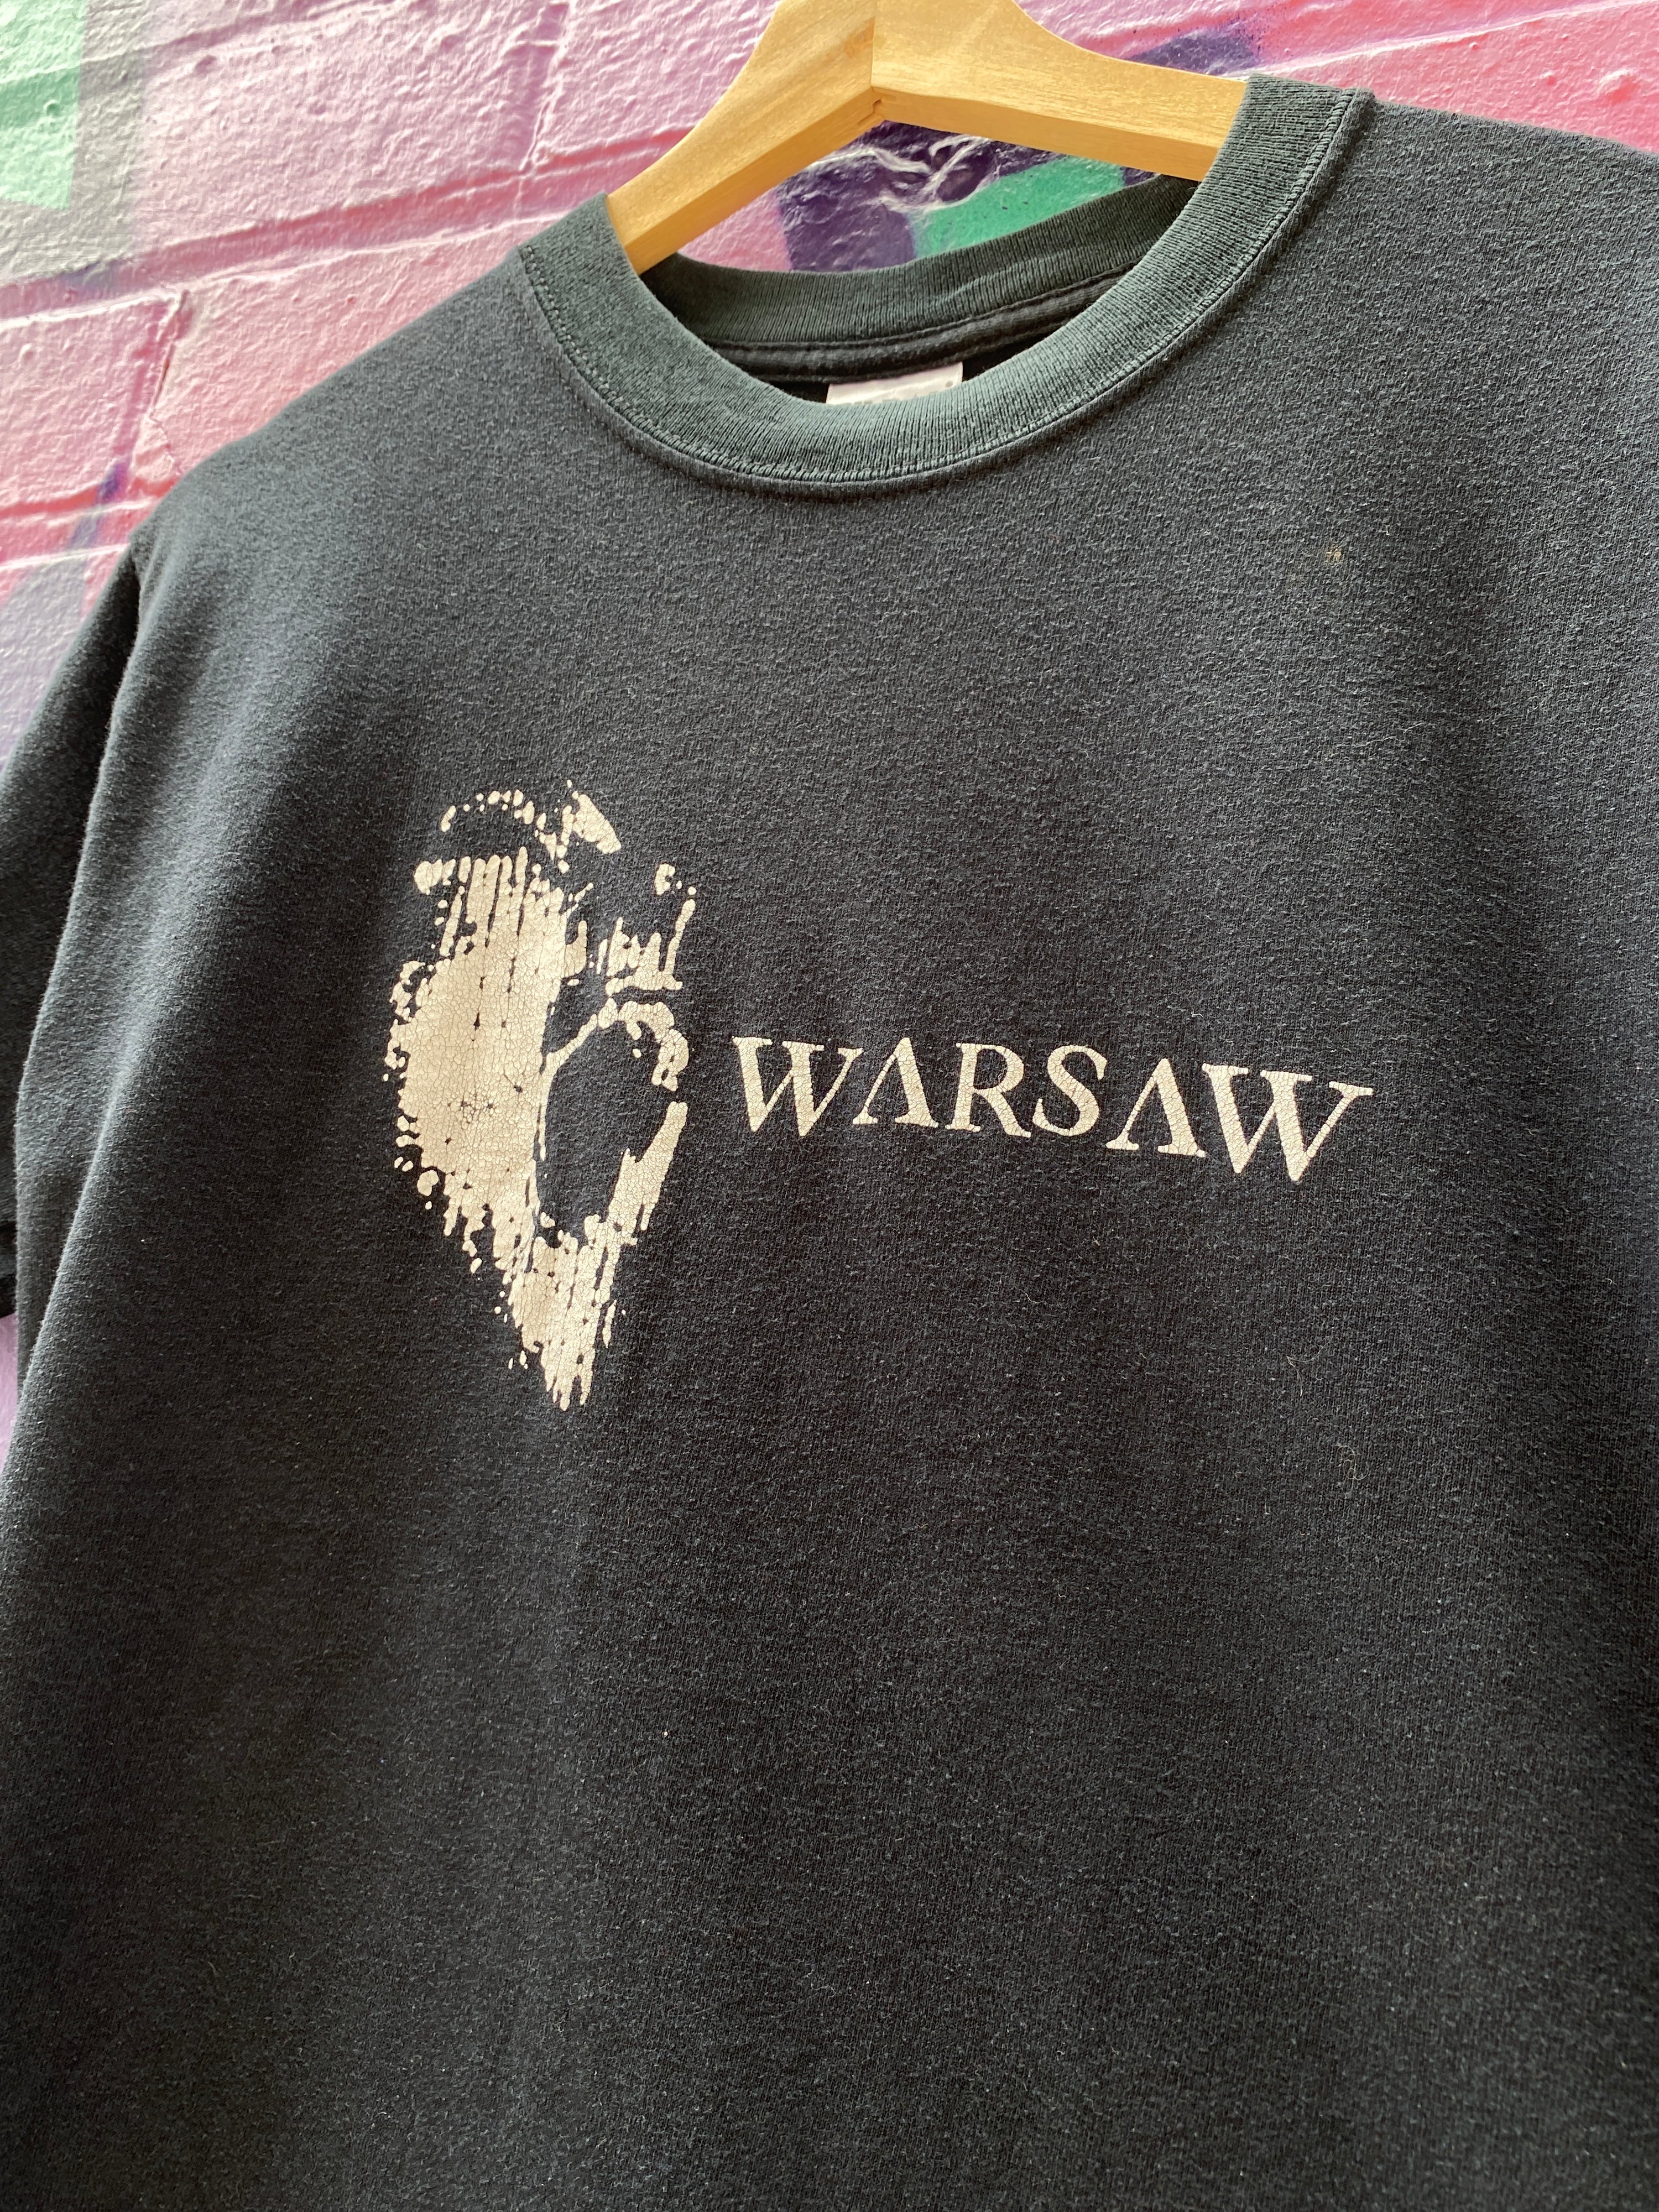 S - Warsaw Poland Tee